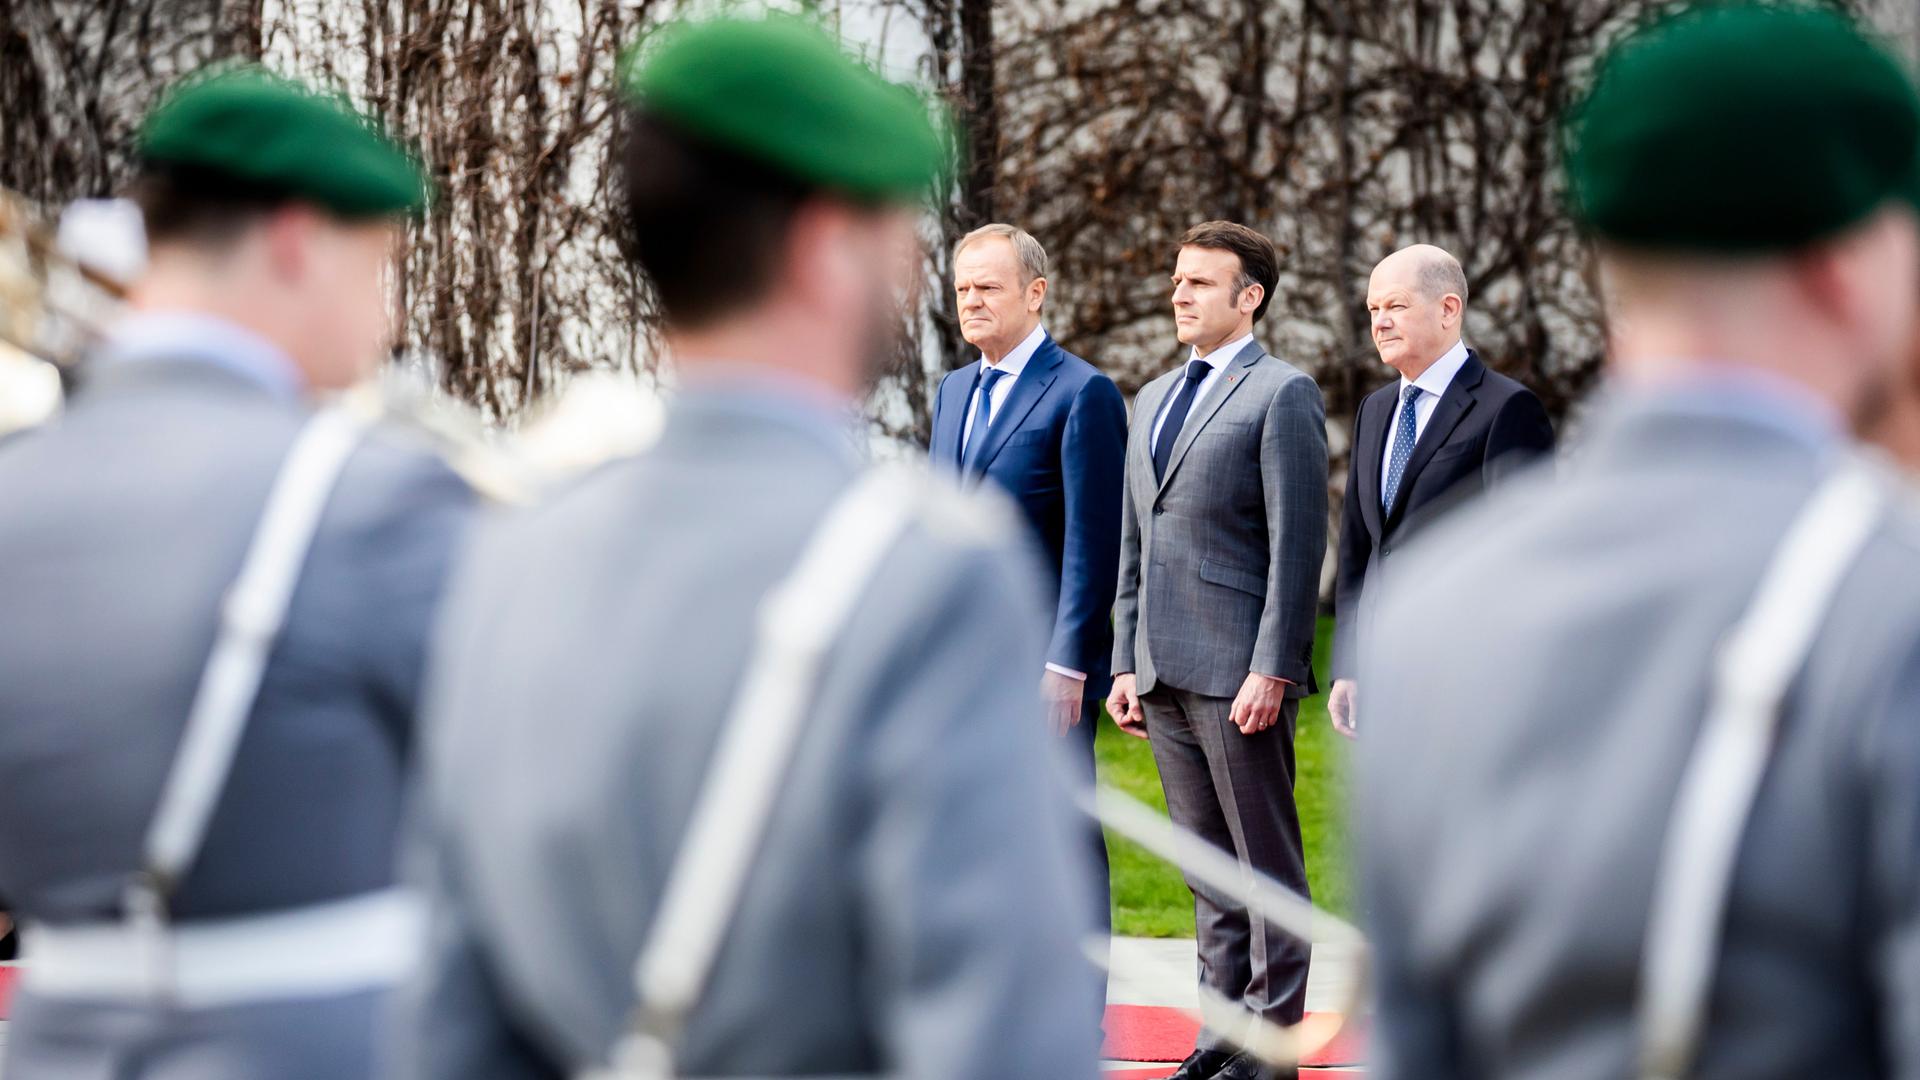 Bundeskanzler Olaf Scholz (SPD) steht neben Emmanuel Macron, Präsident von Frankreich, und Donald Tusk, Ministerpräsident von Polen. Im Vordergrund sind mehrere Soldaten in Uniform zu sehen, die die Gäste mit militärischen Ehren empfangen.